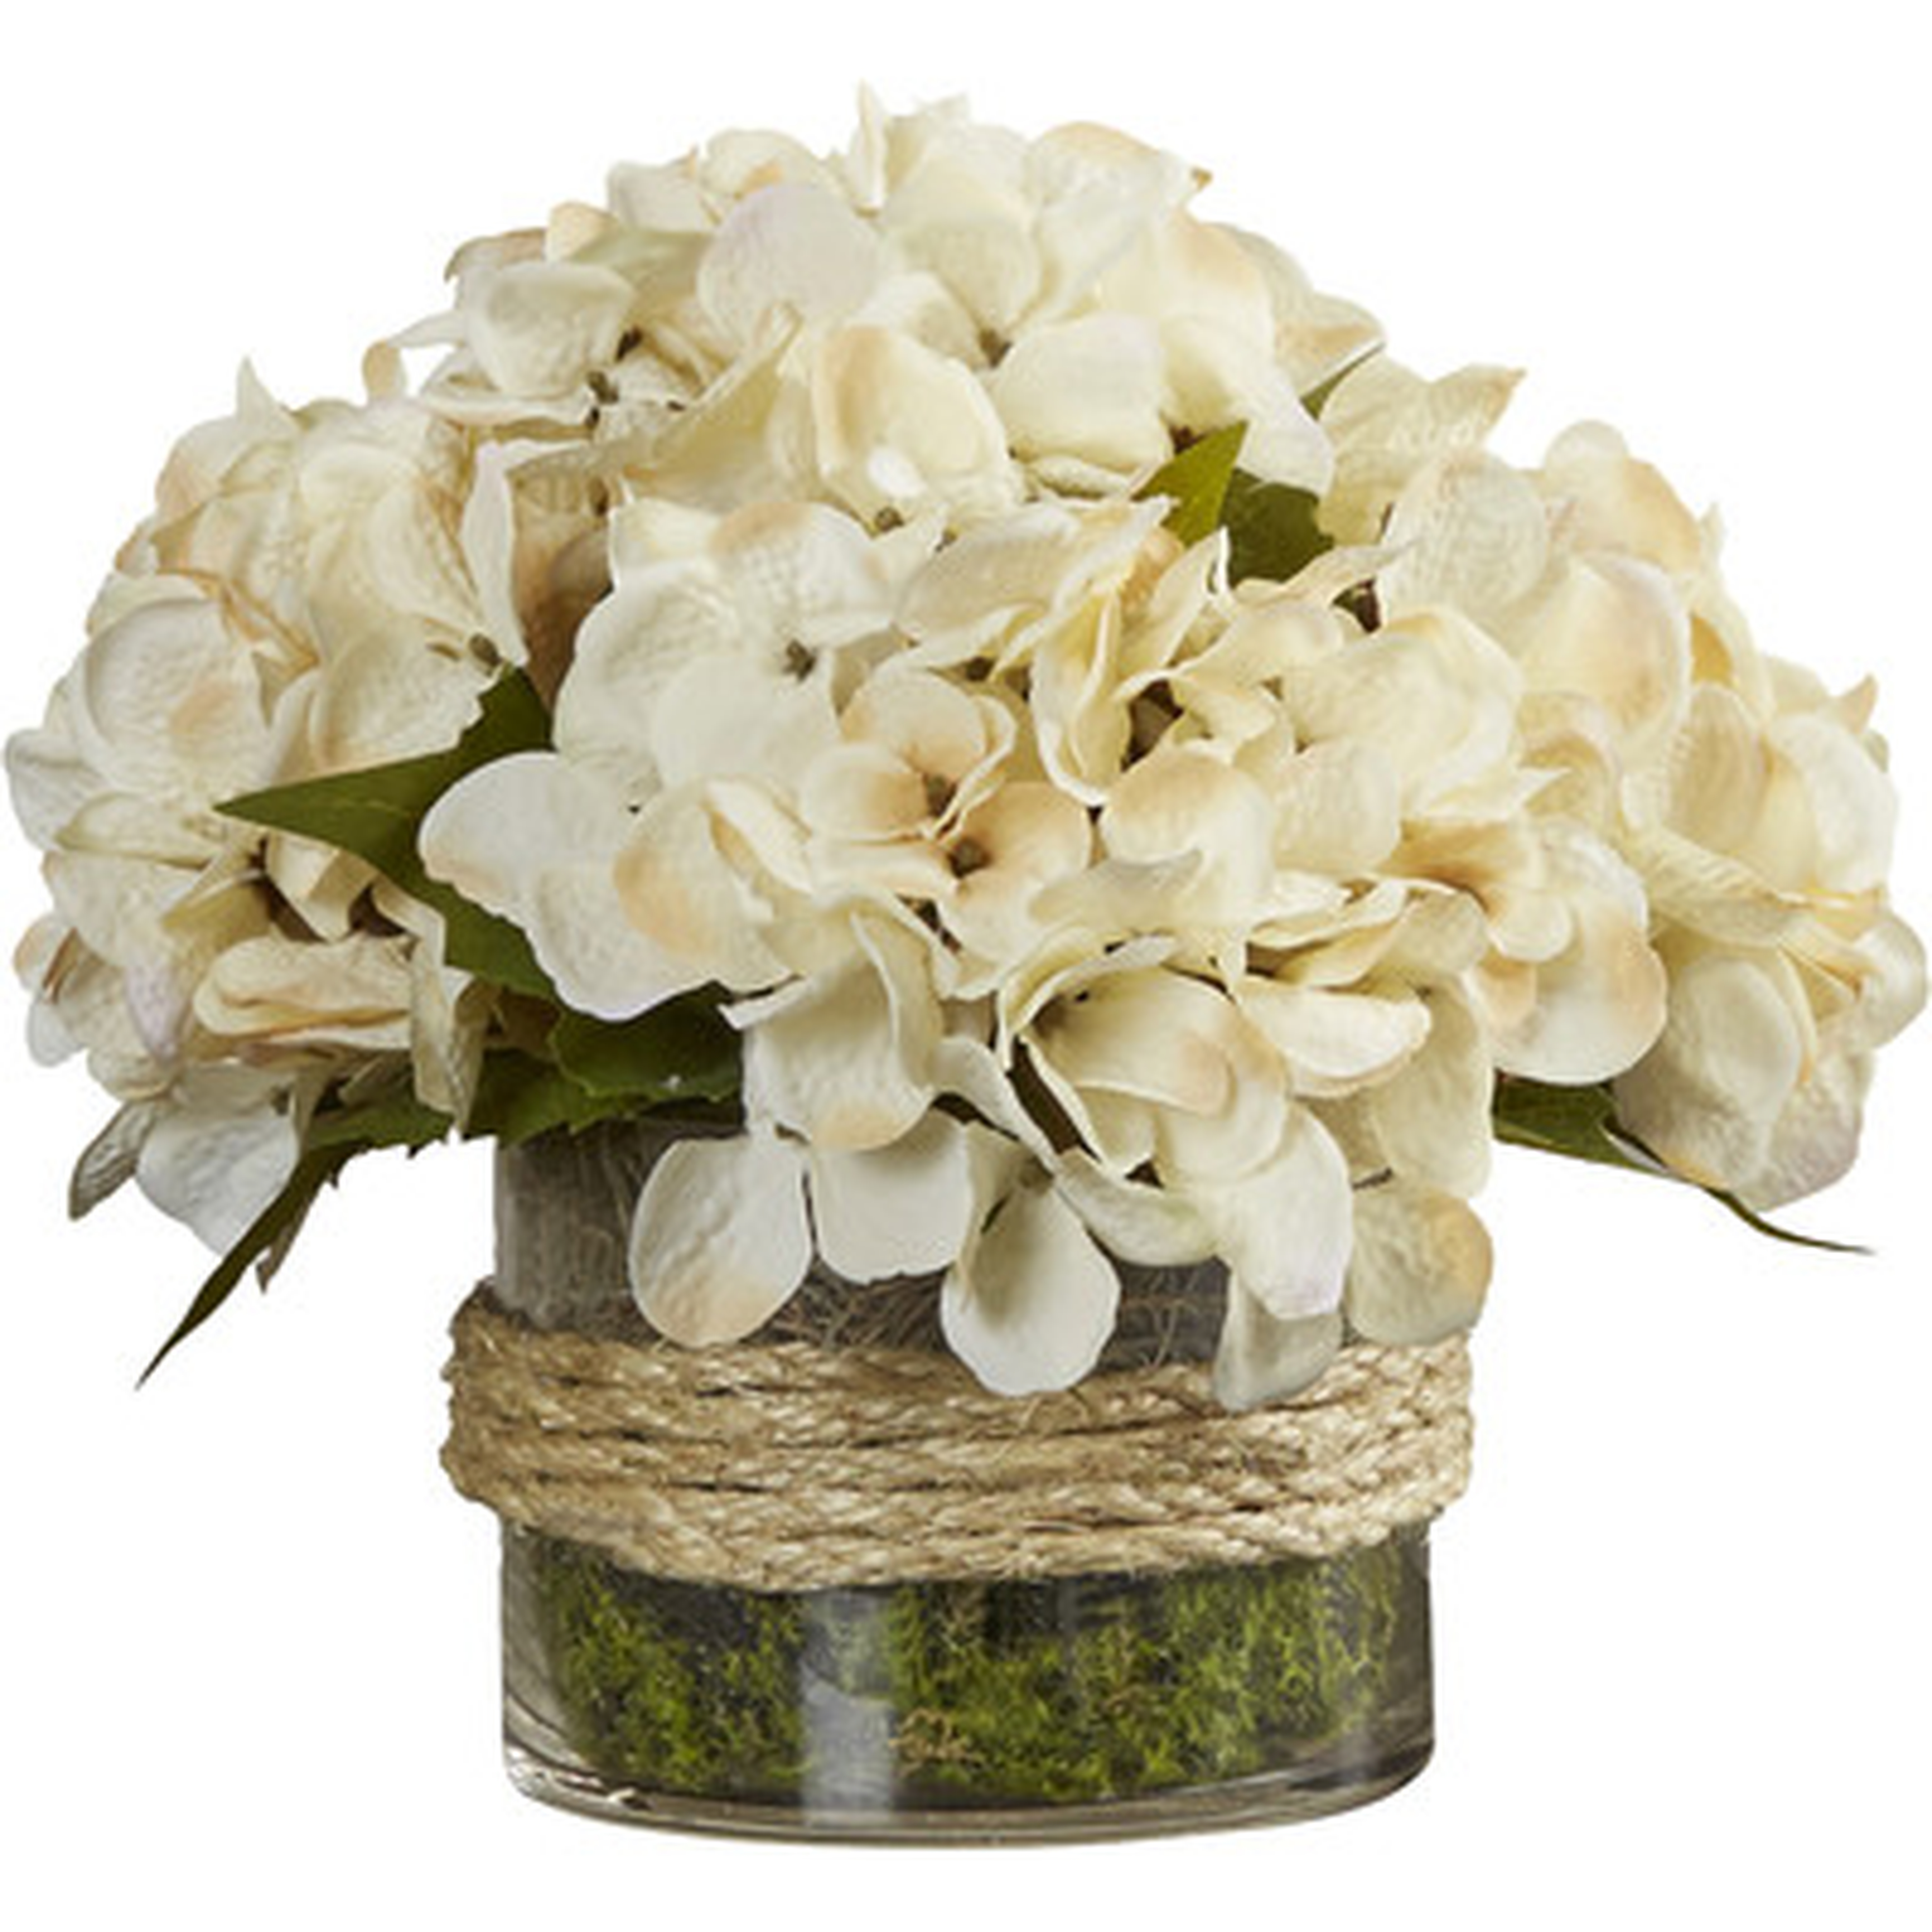 Hydrangea Floral Arrangement in Rope Glass Vase - Birch Lane